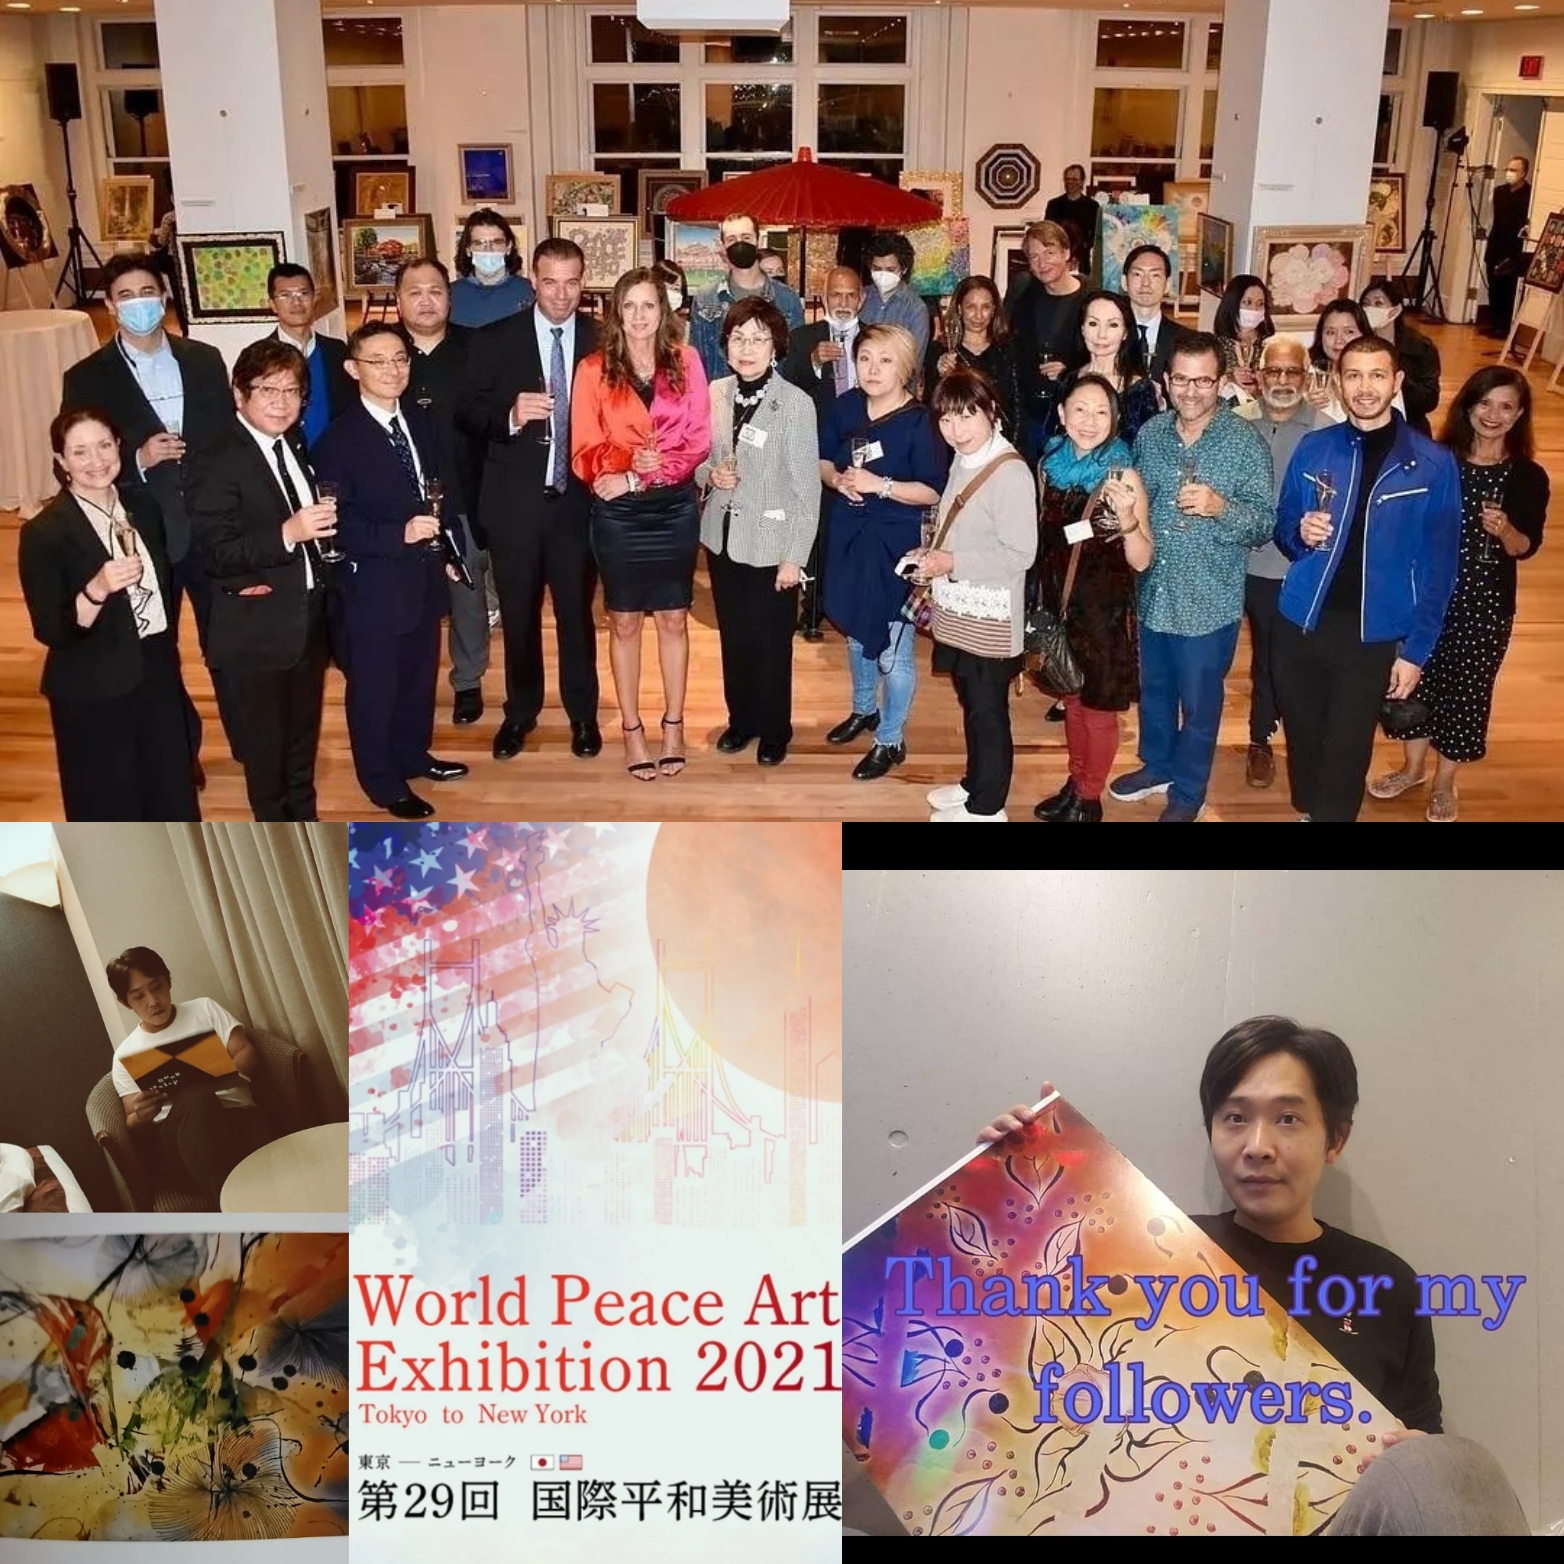 国際平和美術展 in ニューヨーク カーネギーホール